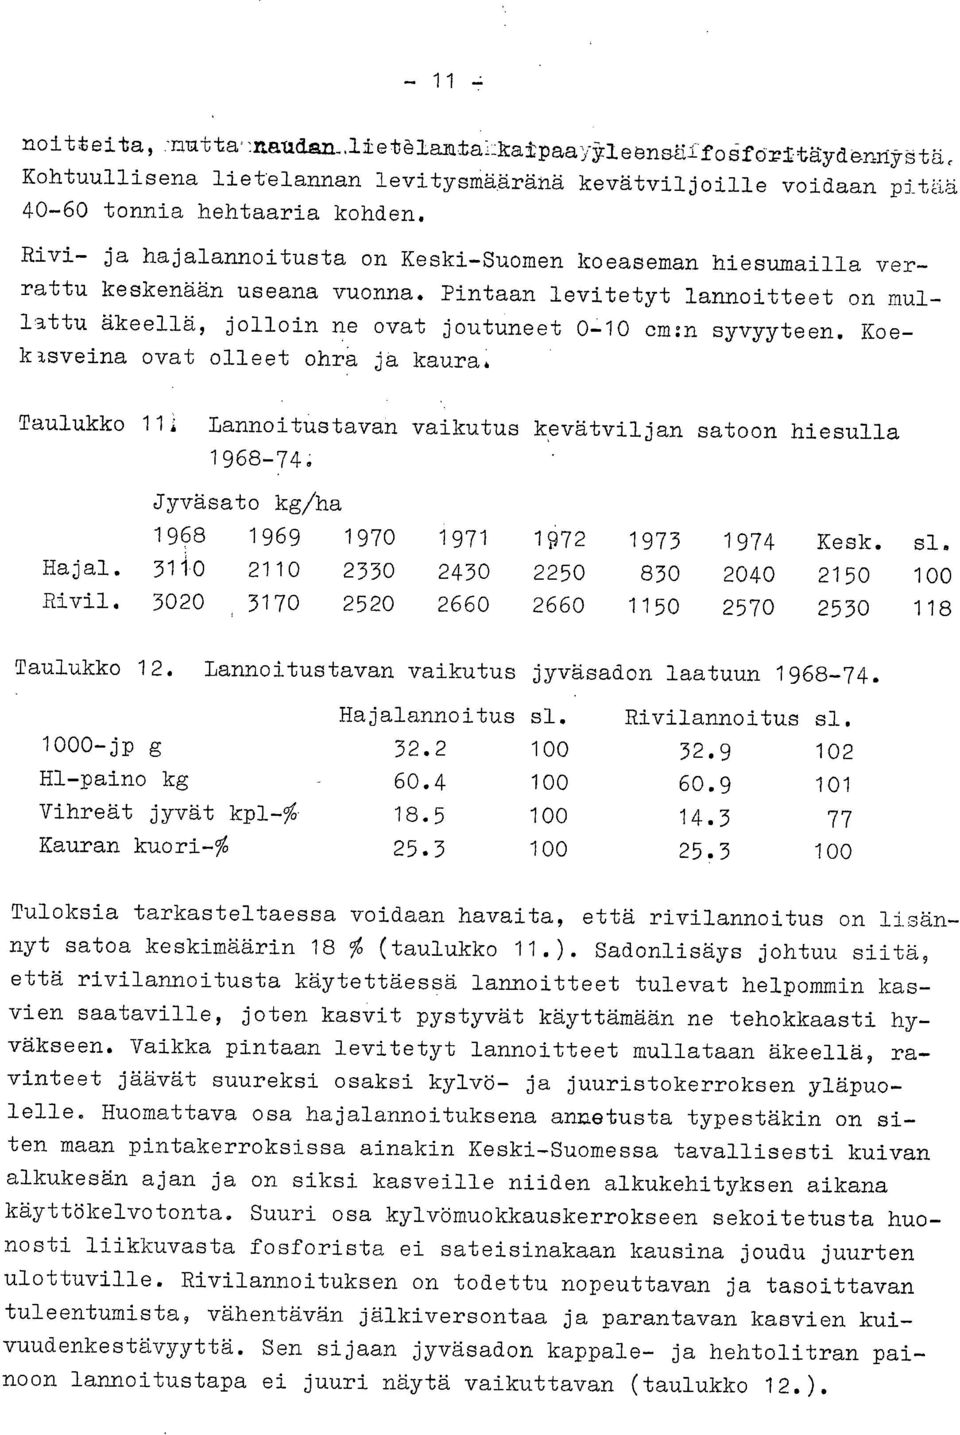 Koeklsveina ovat olleet ohra ja kaura. Taulukko 11. Lannoitustavan vaikutus kevätviljan satoon hiesulla 1968-74 Jyväsato kg/ha 1968 1969 1970 1971 1972 1973 1974 Kesk. sl. Hajal.